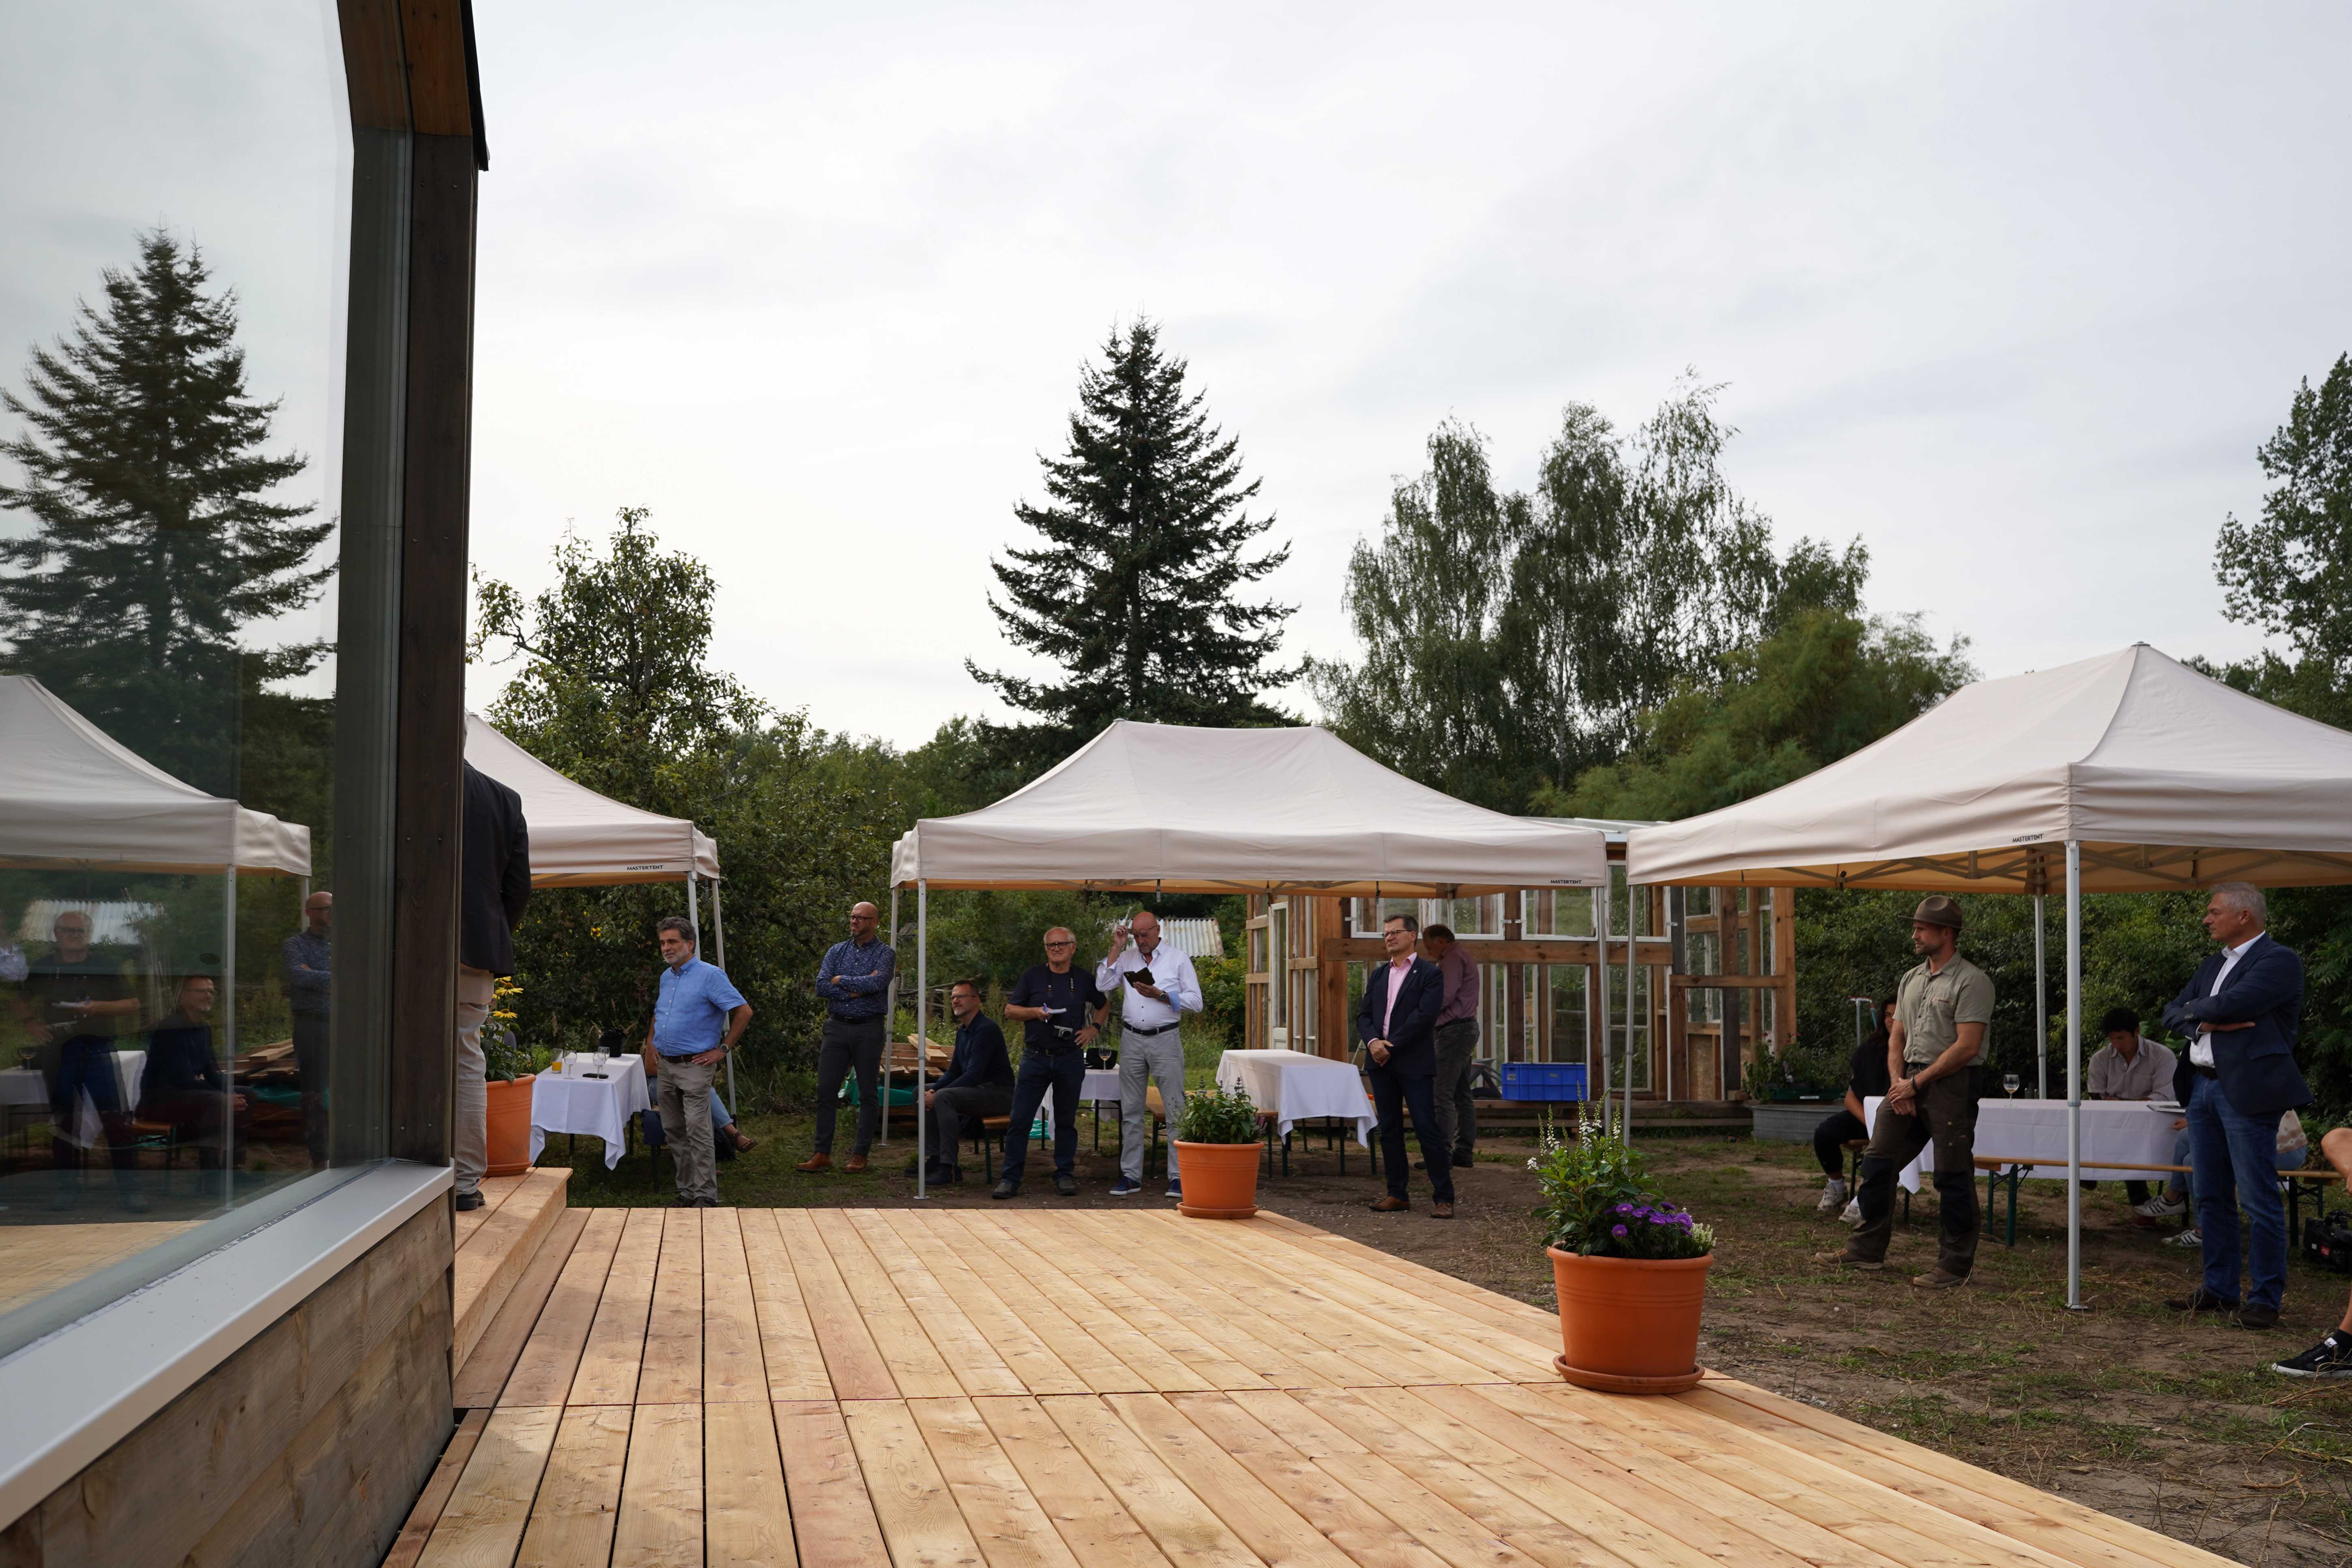 Gäste bei der Eröffnung des Tiny Houses in Raddusch. Foto: Valentina Troendle